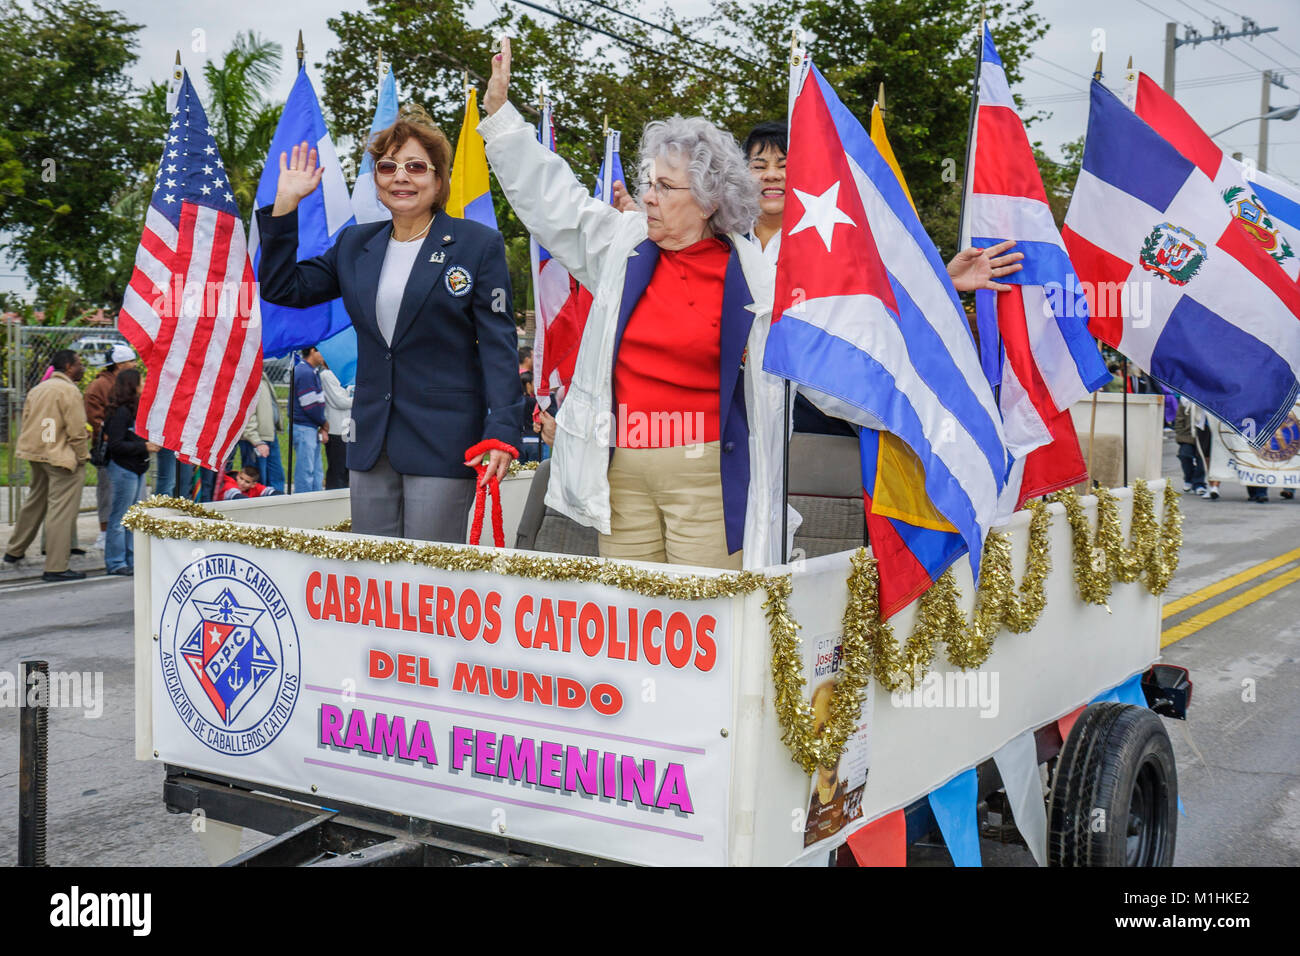 Florida, Hialeah, Jose Marti Parade, zu Ehren des kubanischen Dichters, Teilnehmers, hispanischen Banners, Frauen, Katholiken, Christen, Religion, FL080120021 Stockfoto